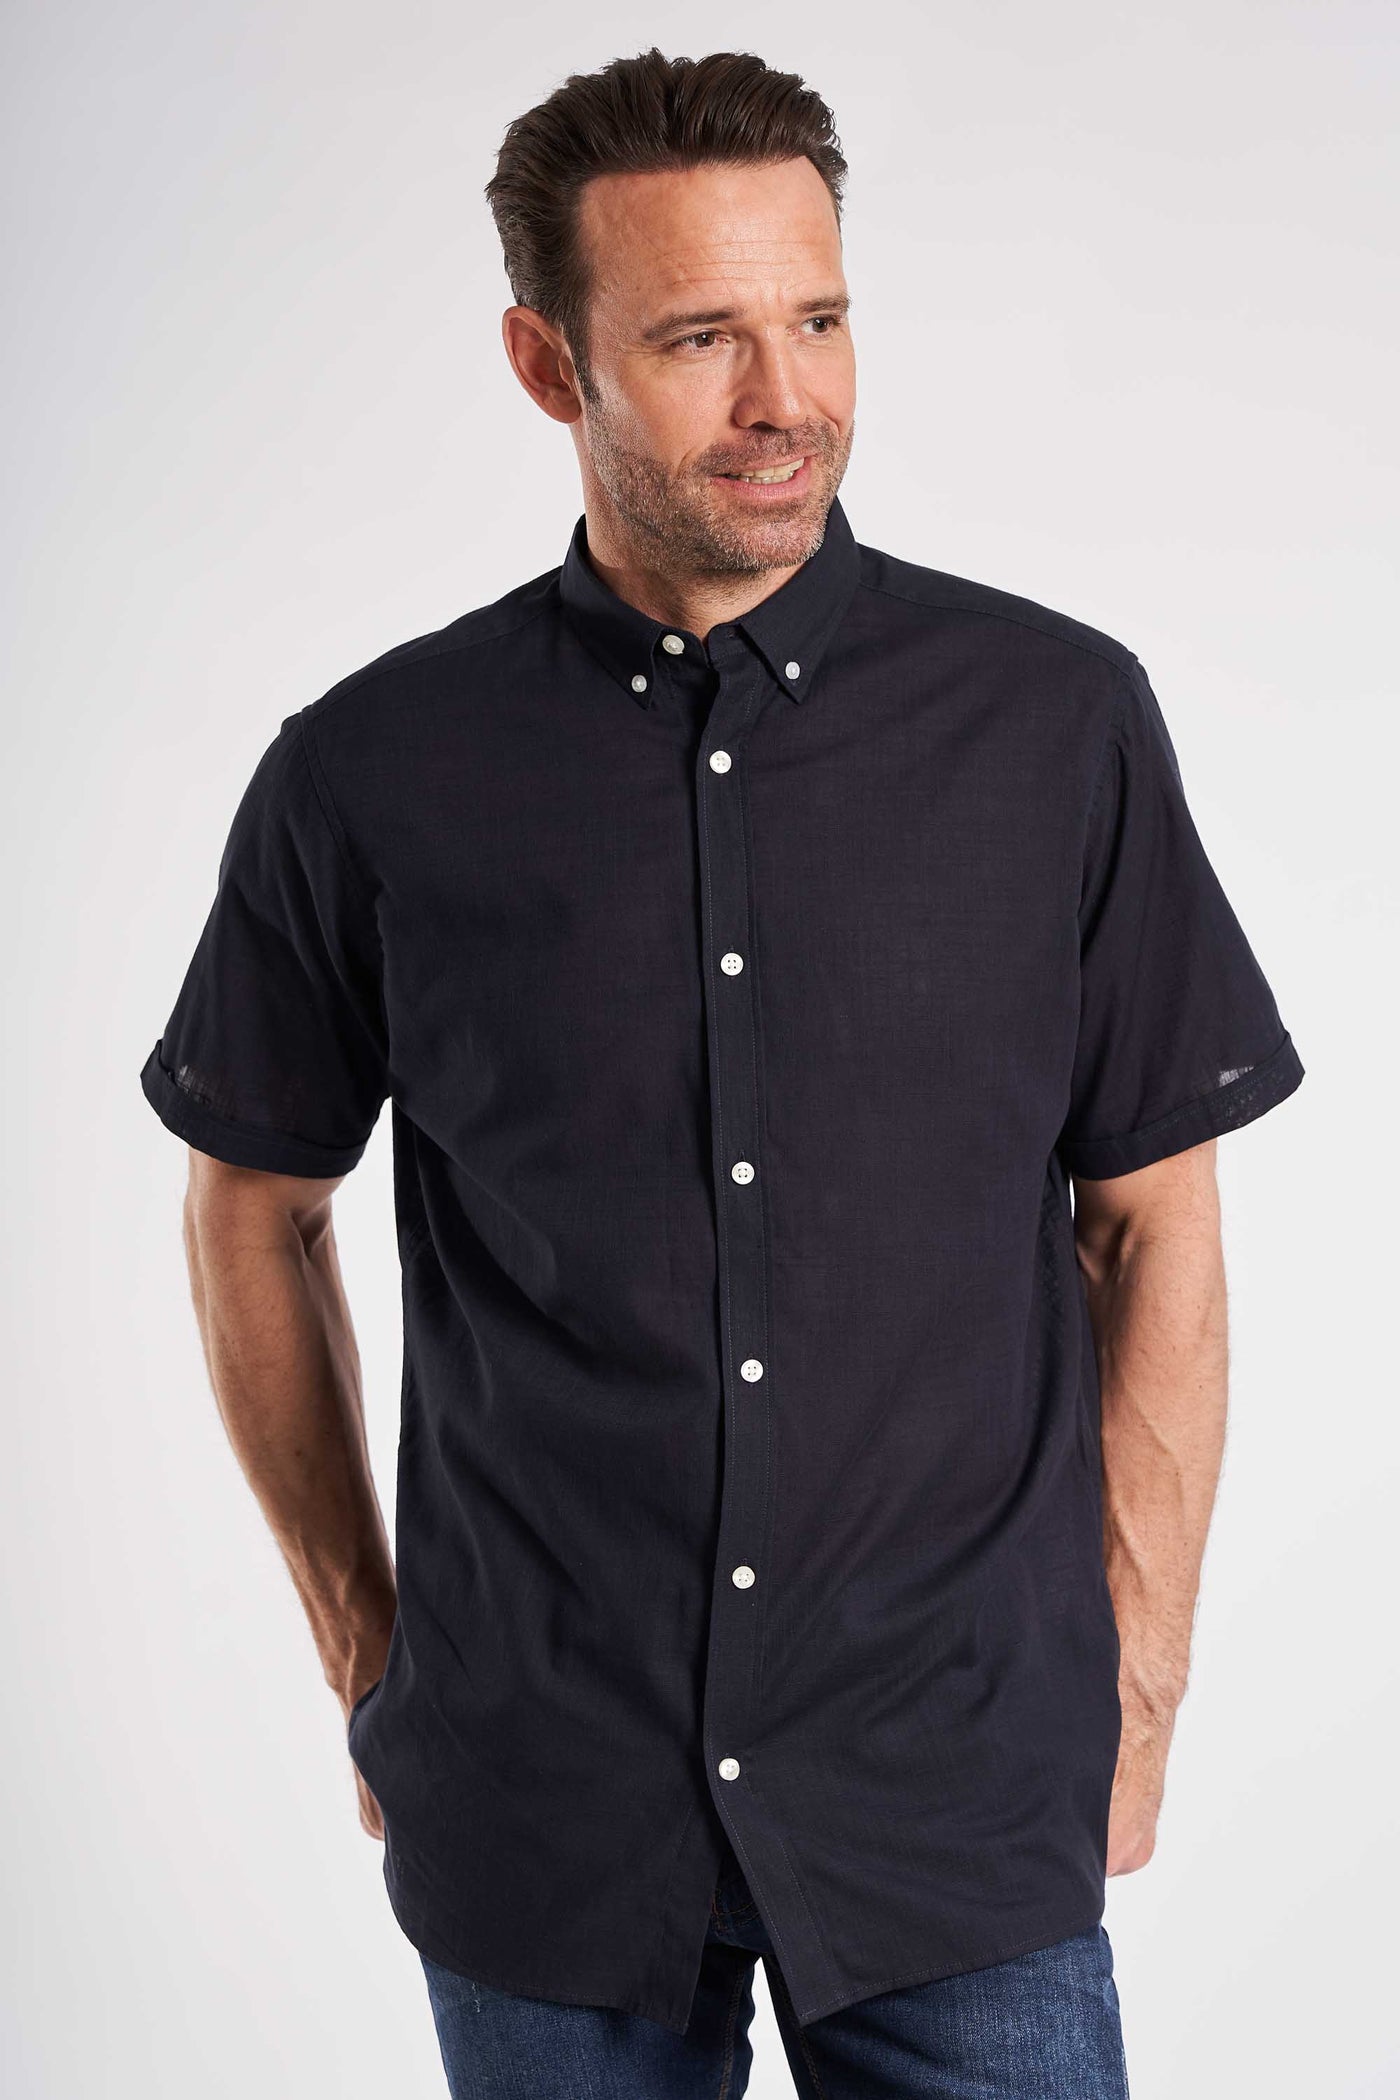 S/S Linen Look Shirt - Navy